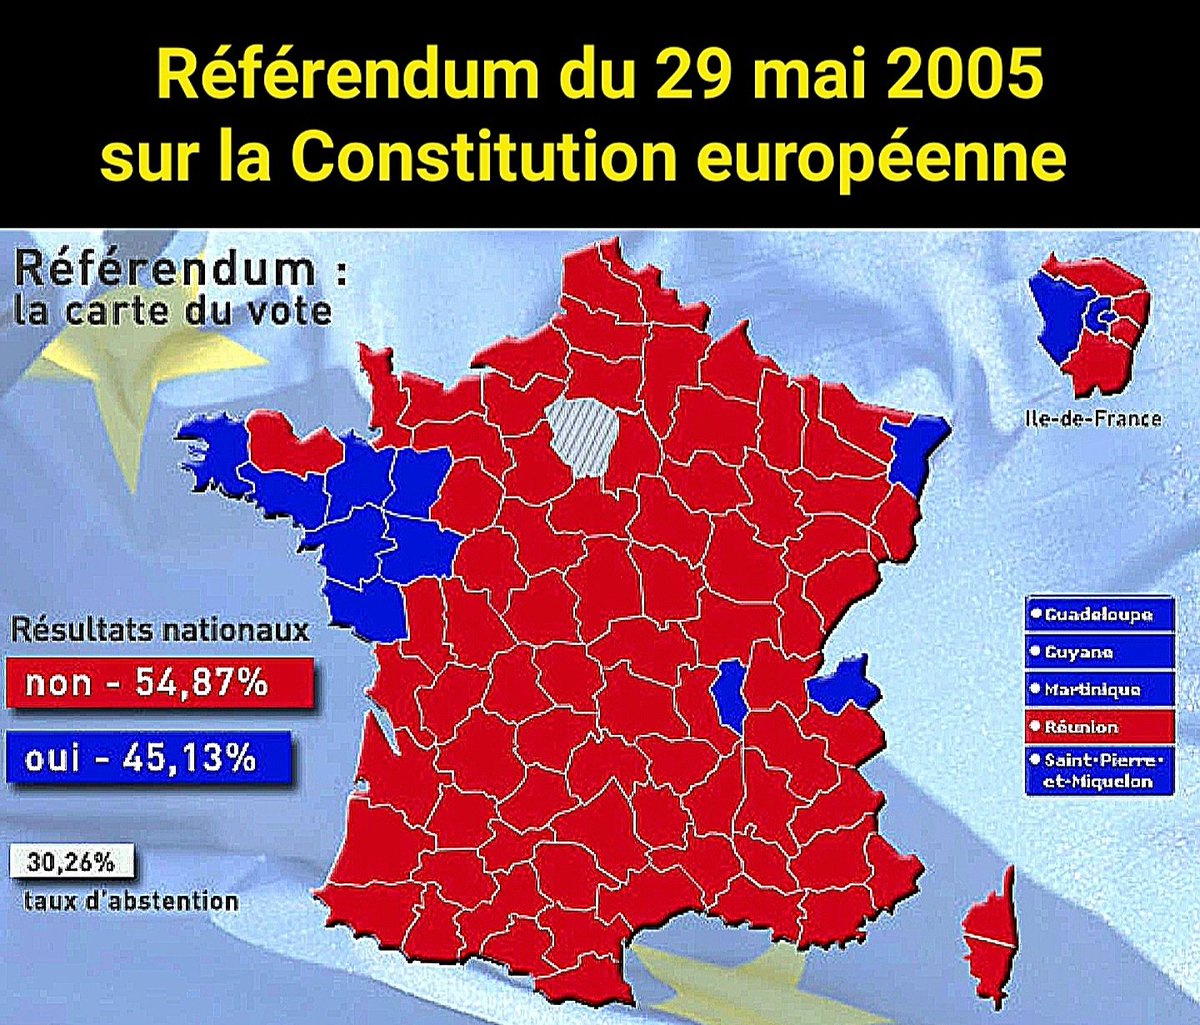 🚨IL Y A 18 ANS, 55% DES FRANÇAIS VOTAIENT NON À LA CONSTITUTION EUROPÉENNE
Ils rejetèrent l'🇪🇺fédérale,asservie aux🇺🇸 et aux puissances d'argent.
Le traité de Lisbonne de 2008 a ensuite bafoué ce vote mais 🇫🇷et🇪🇺 s'enfoncent depuis lors dans la dictature jusqu'à la chute finale.